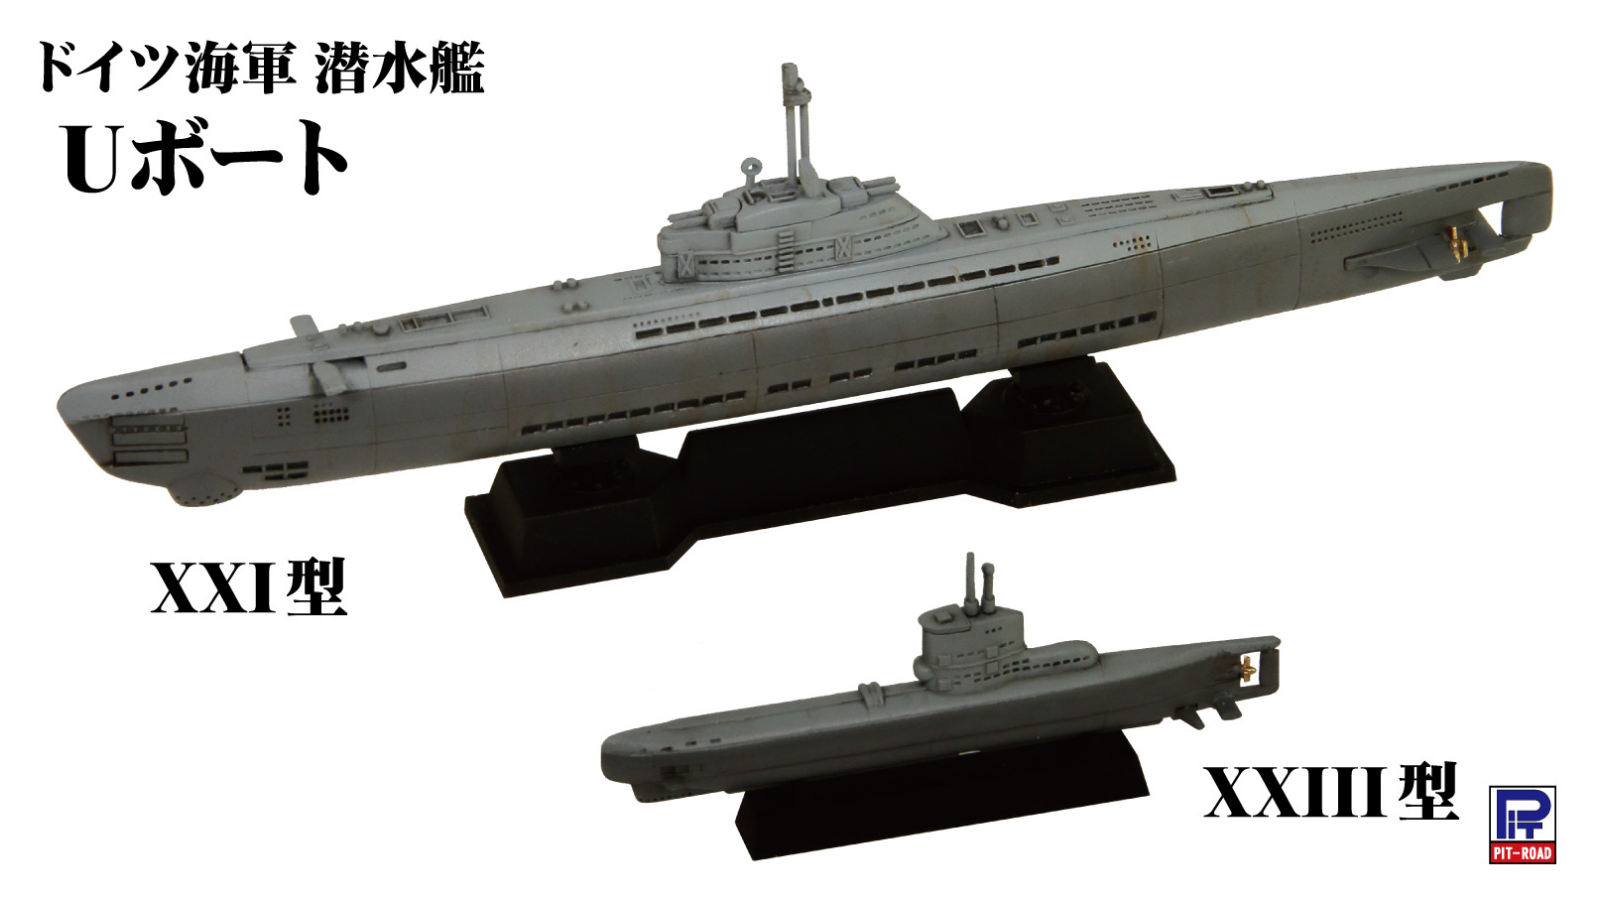 1/700 ドイツ海軍 潜水艦 Uボート XXI型＆XXIII型 タムタムオンラインショップ札幌店 通販 ミリタリーモデル